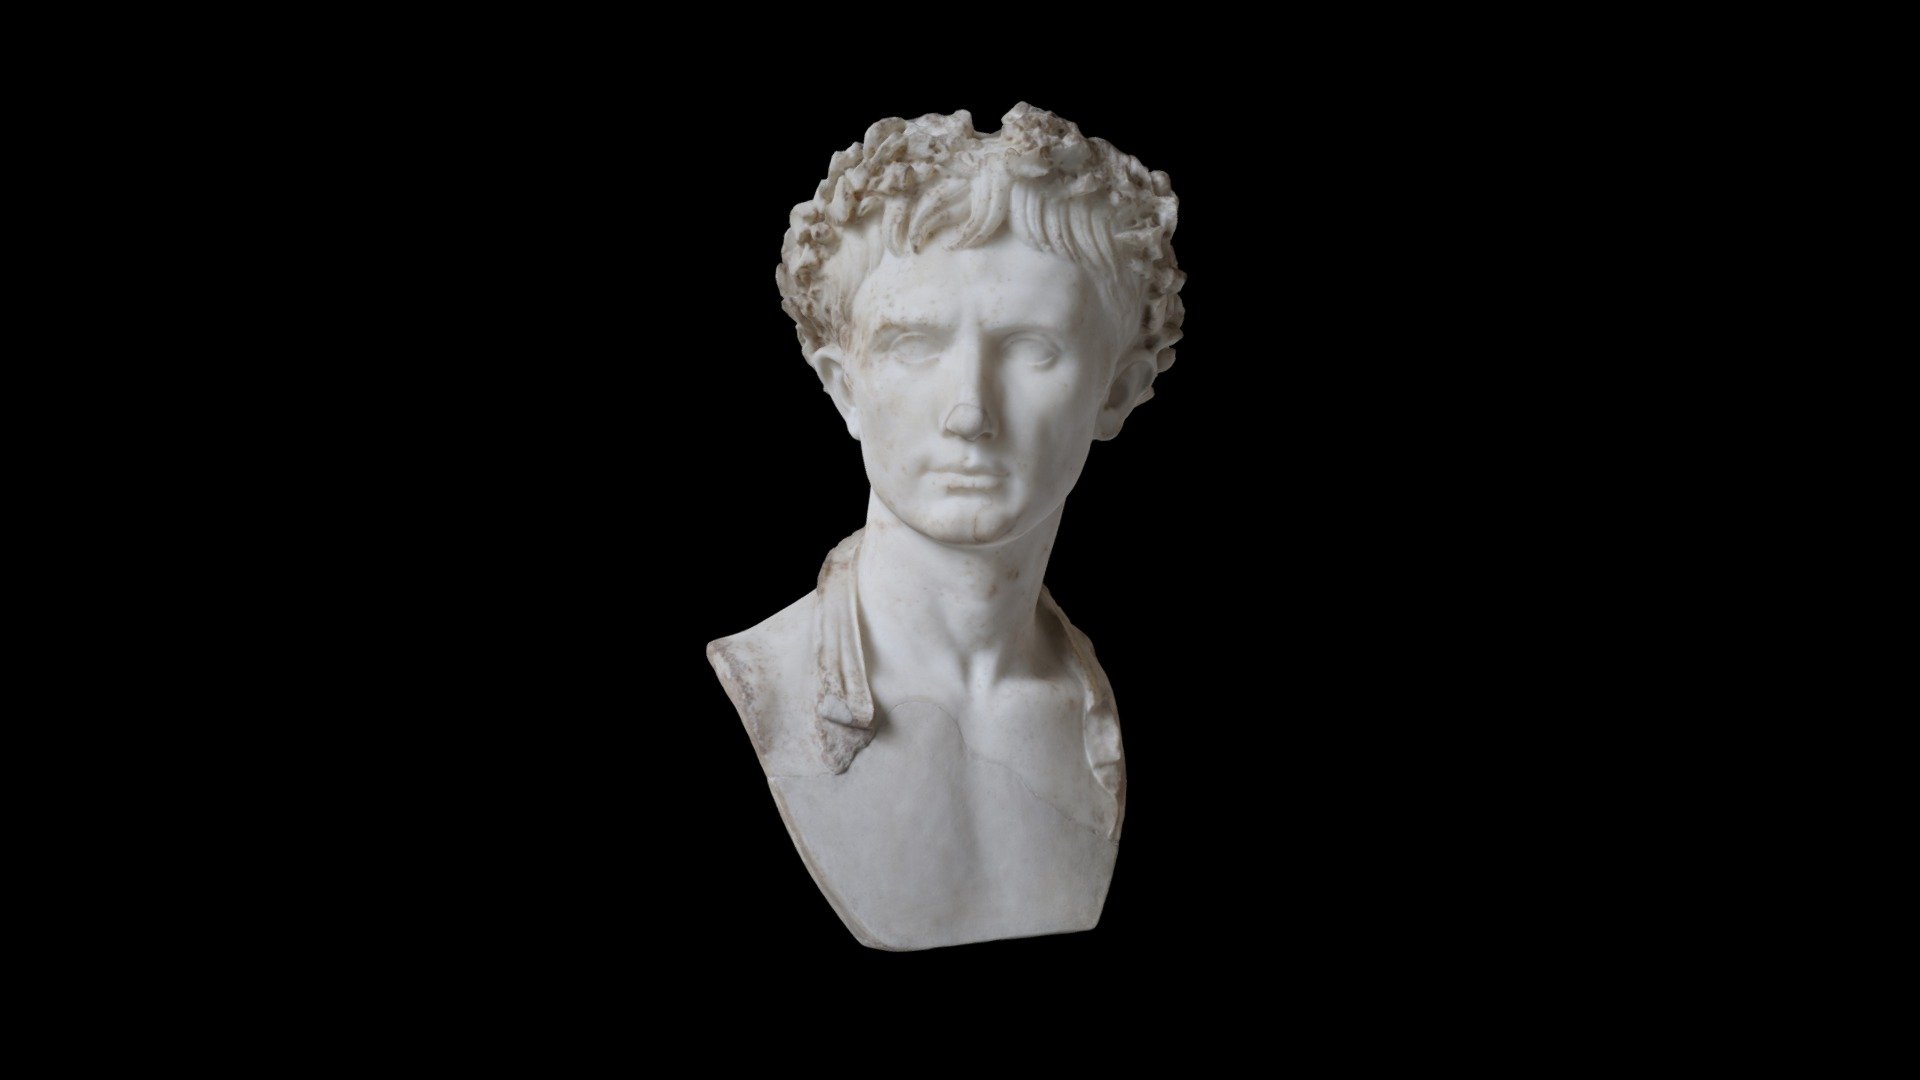 The so-called &ldquo;Augustus Bevilacqua